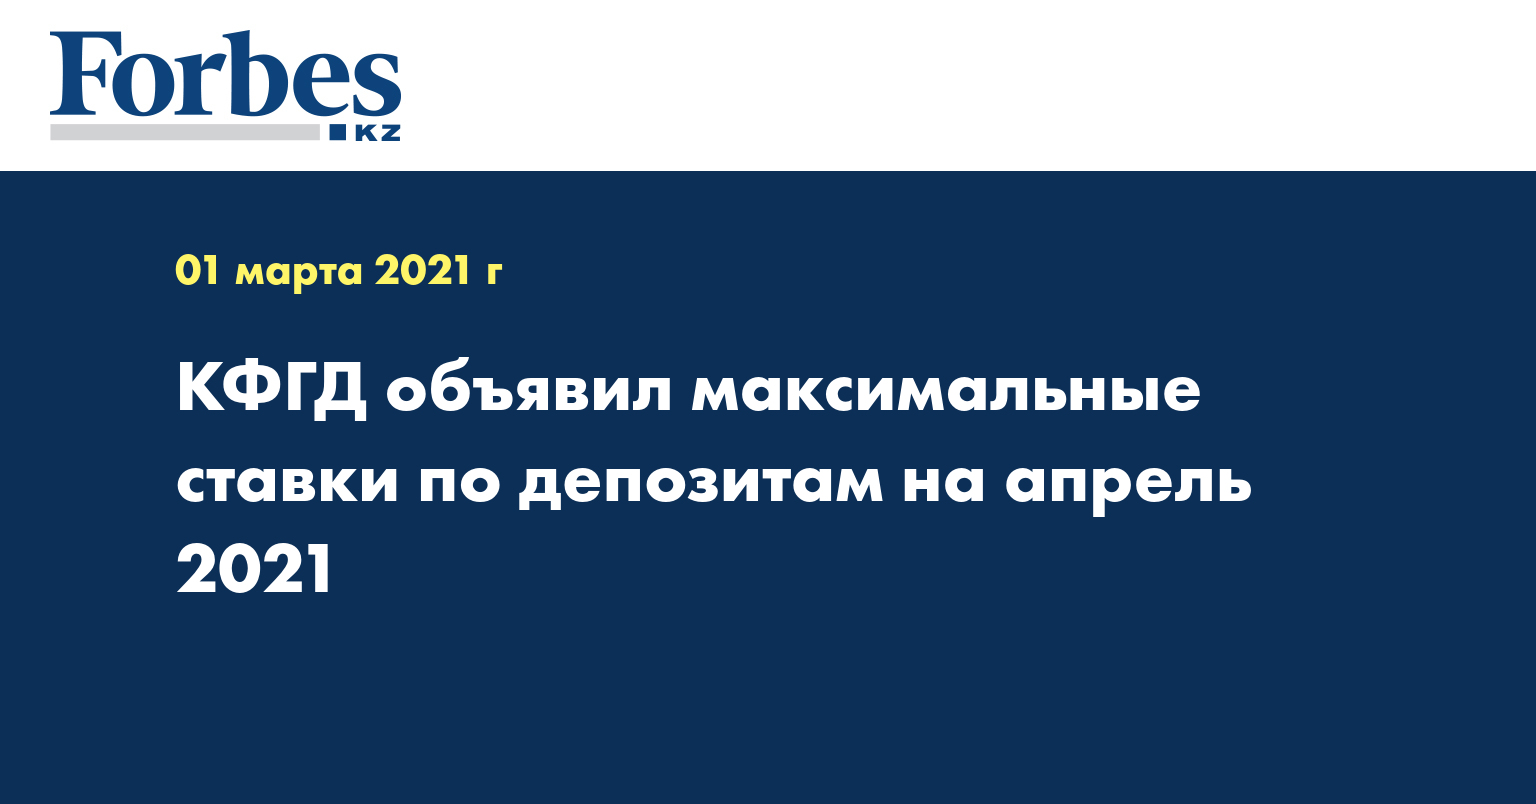 КФГД объявил максимальные ставки по депозитам на апрель 2021